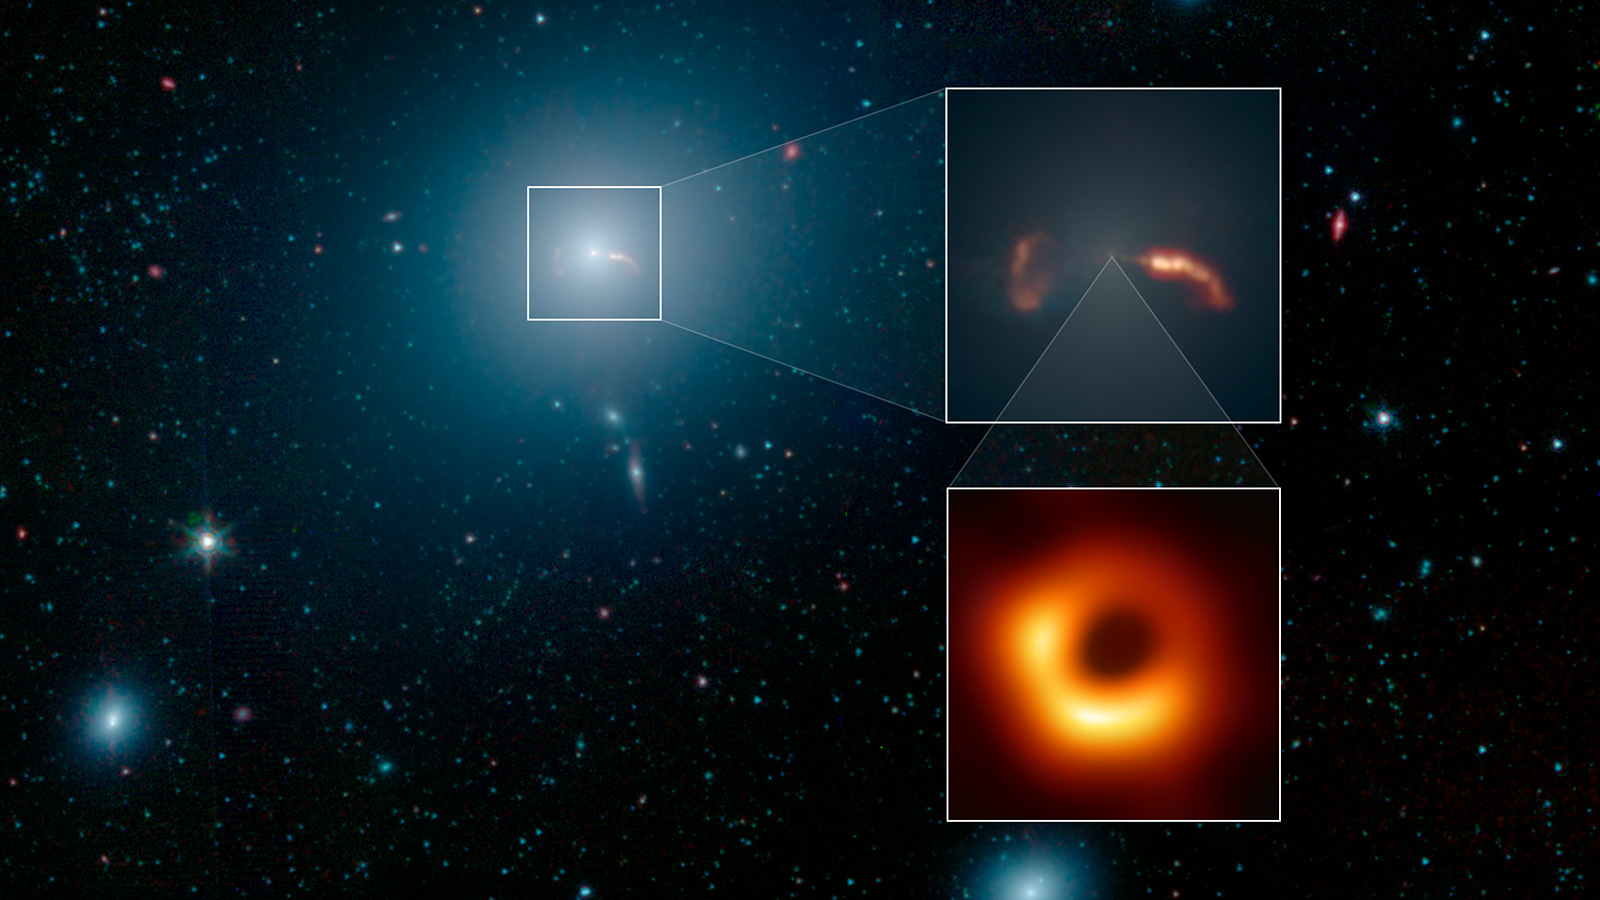 La galaxia, el chorro y un famoso agujero negro